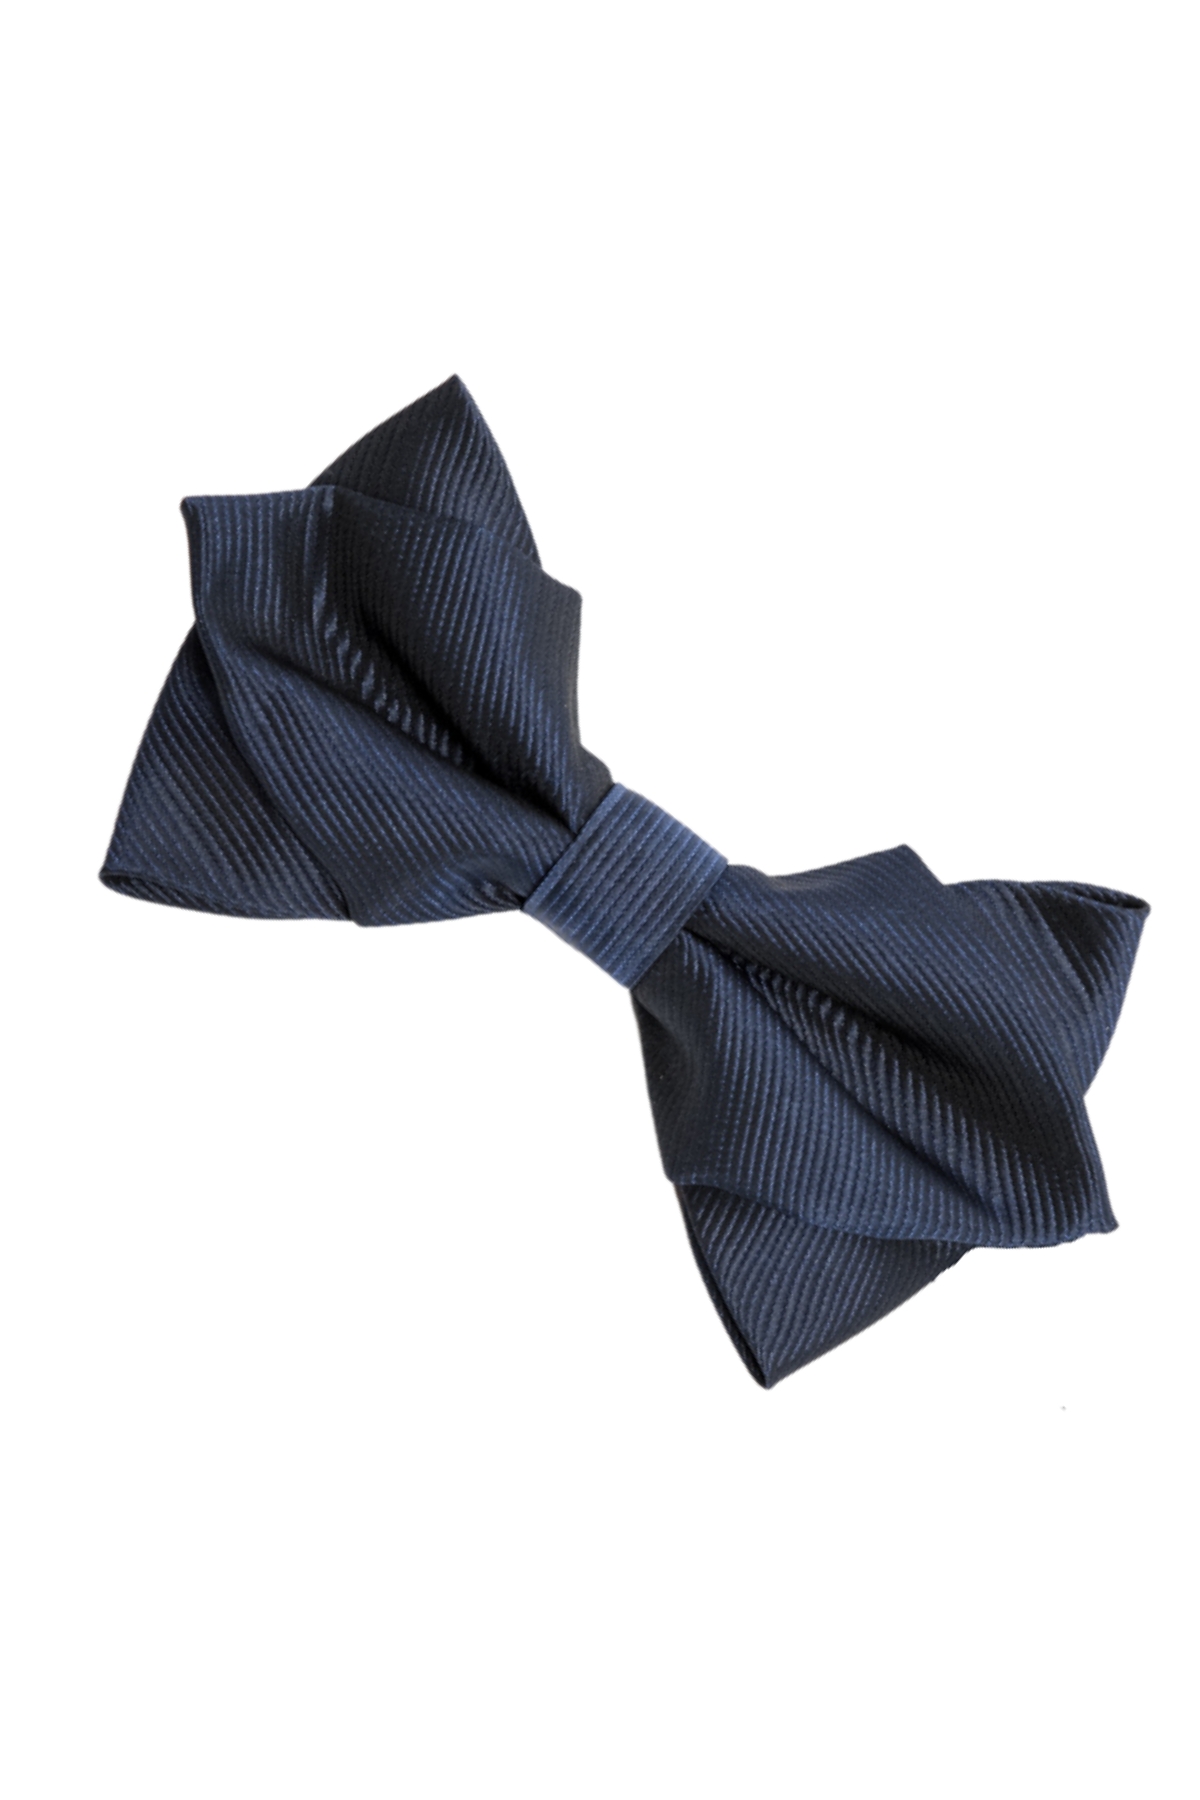 lipsud ja kravat (16)